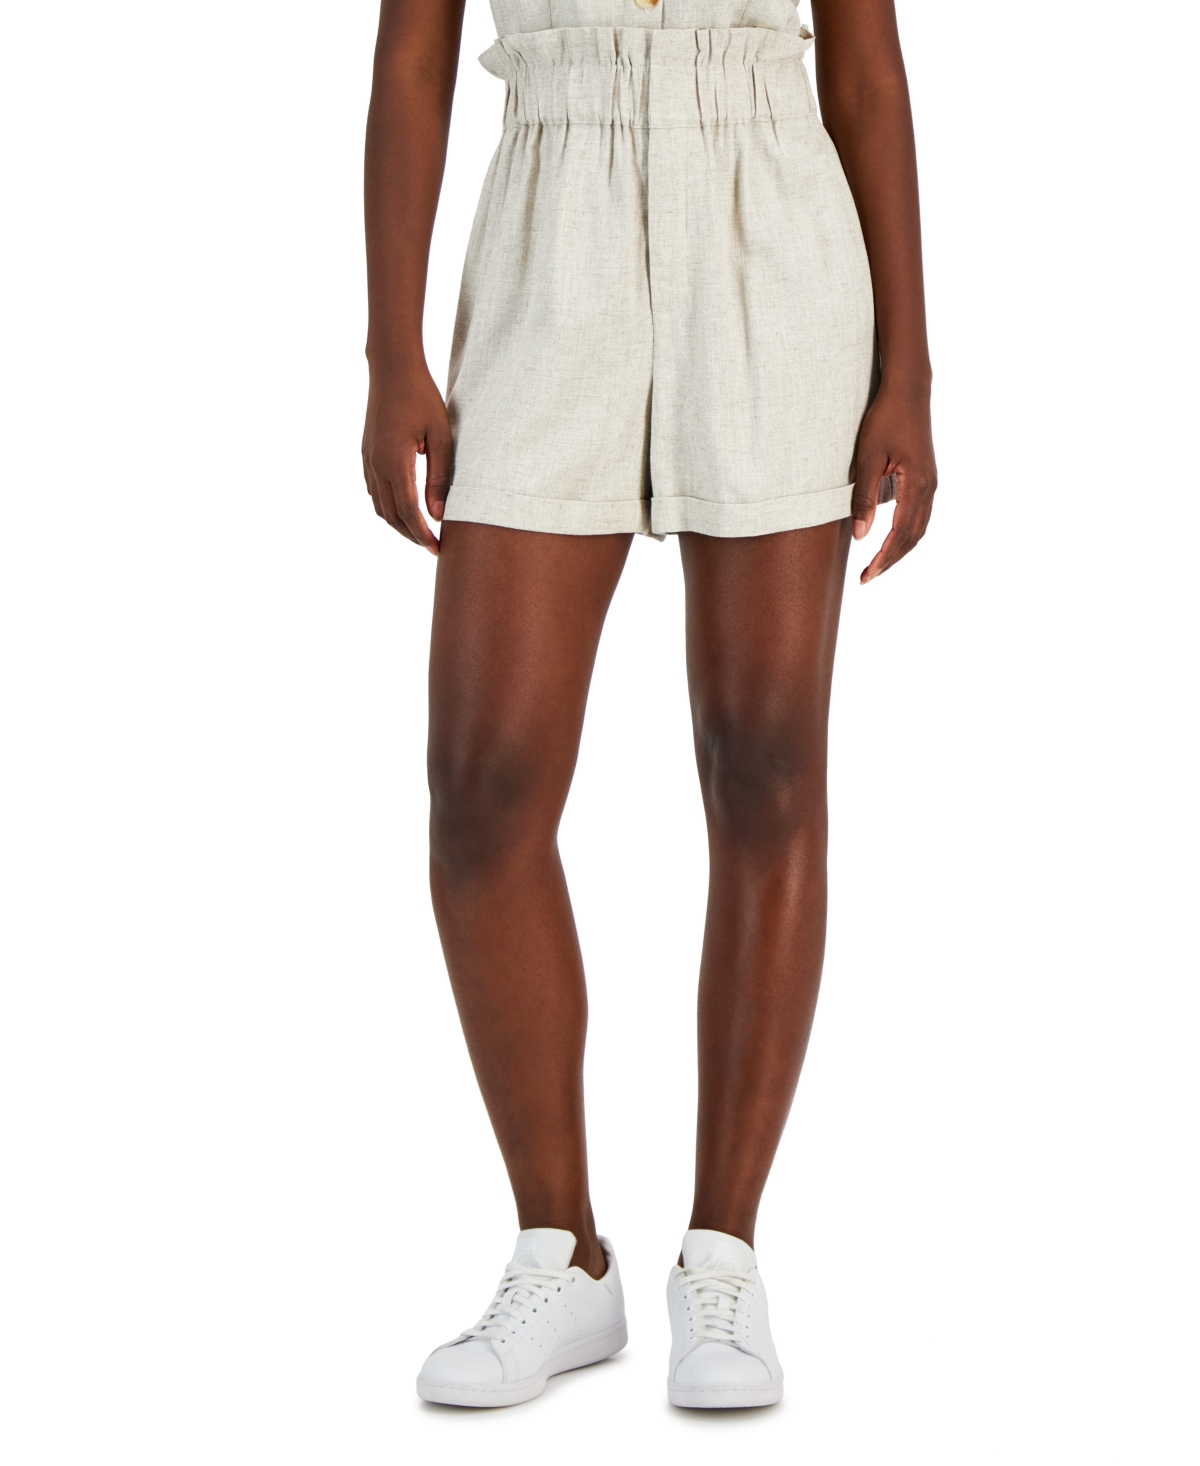 Women's Linen-Blend Paperbag-Waist Shorts, Created for Macy's - White